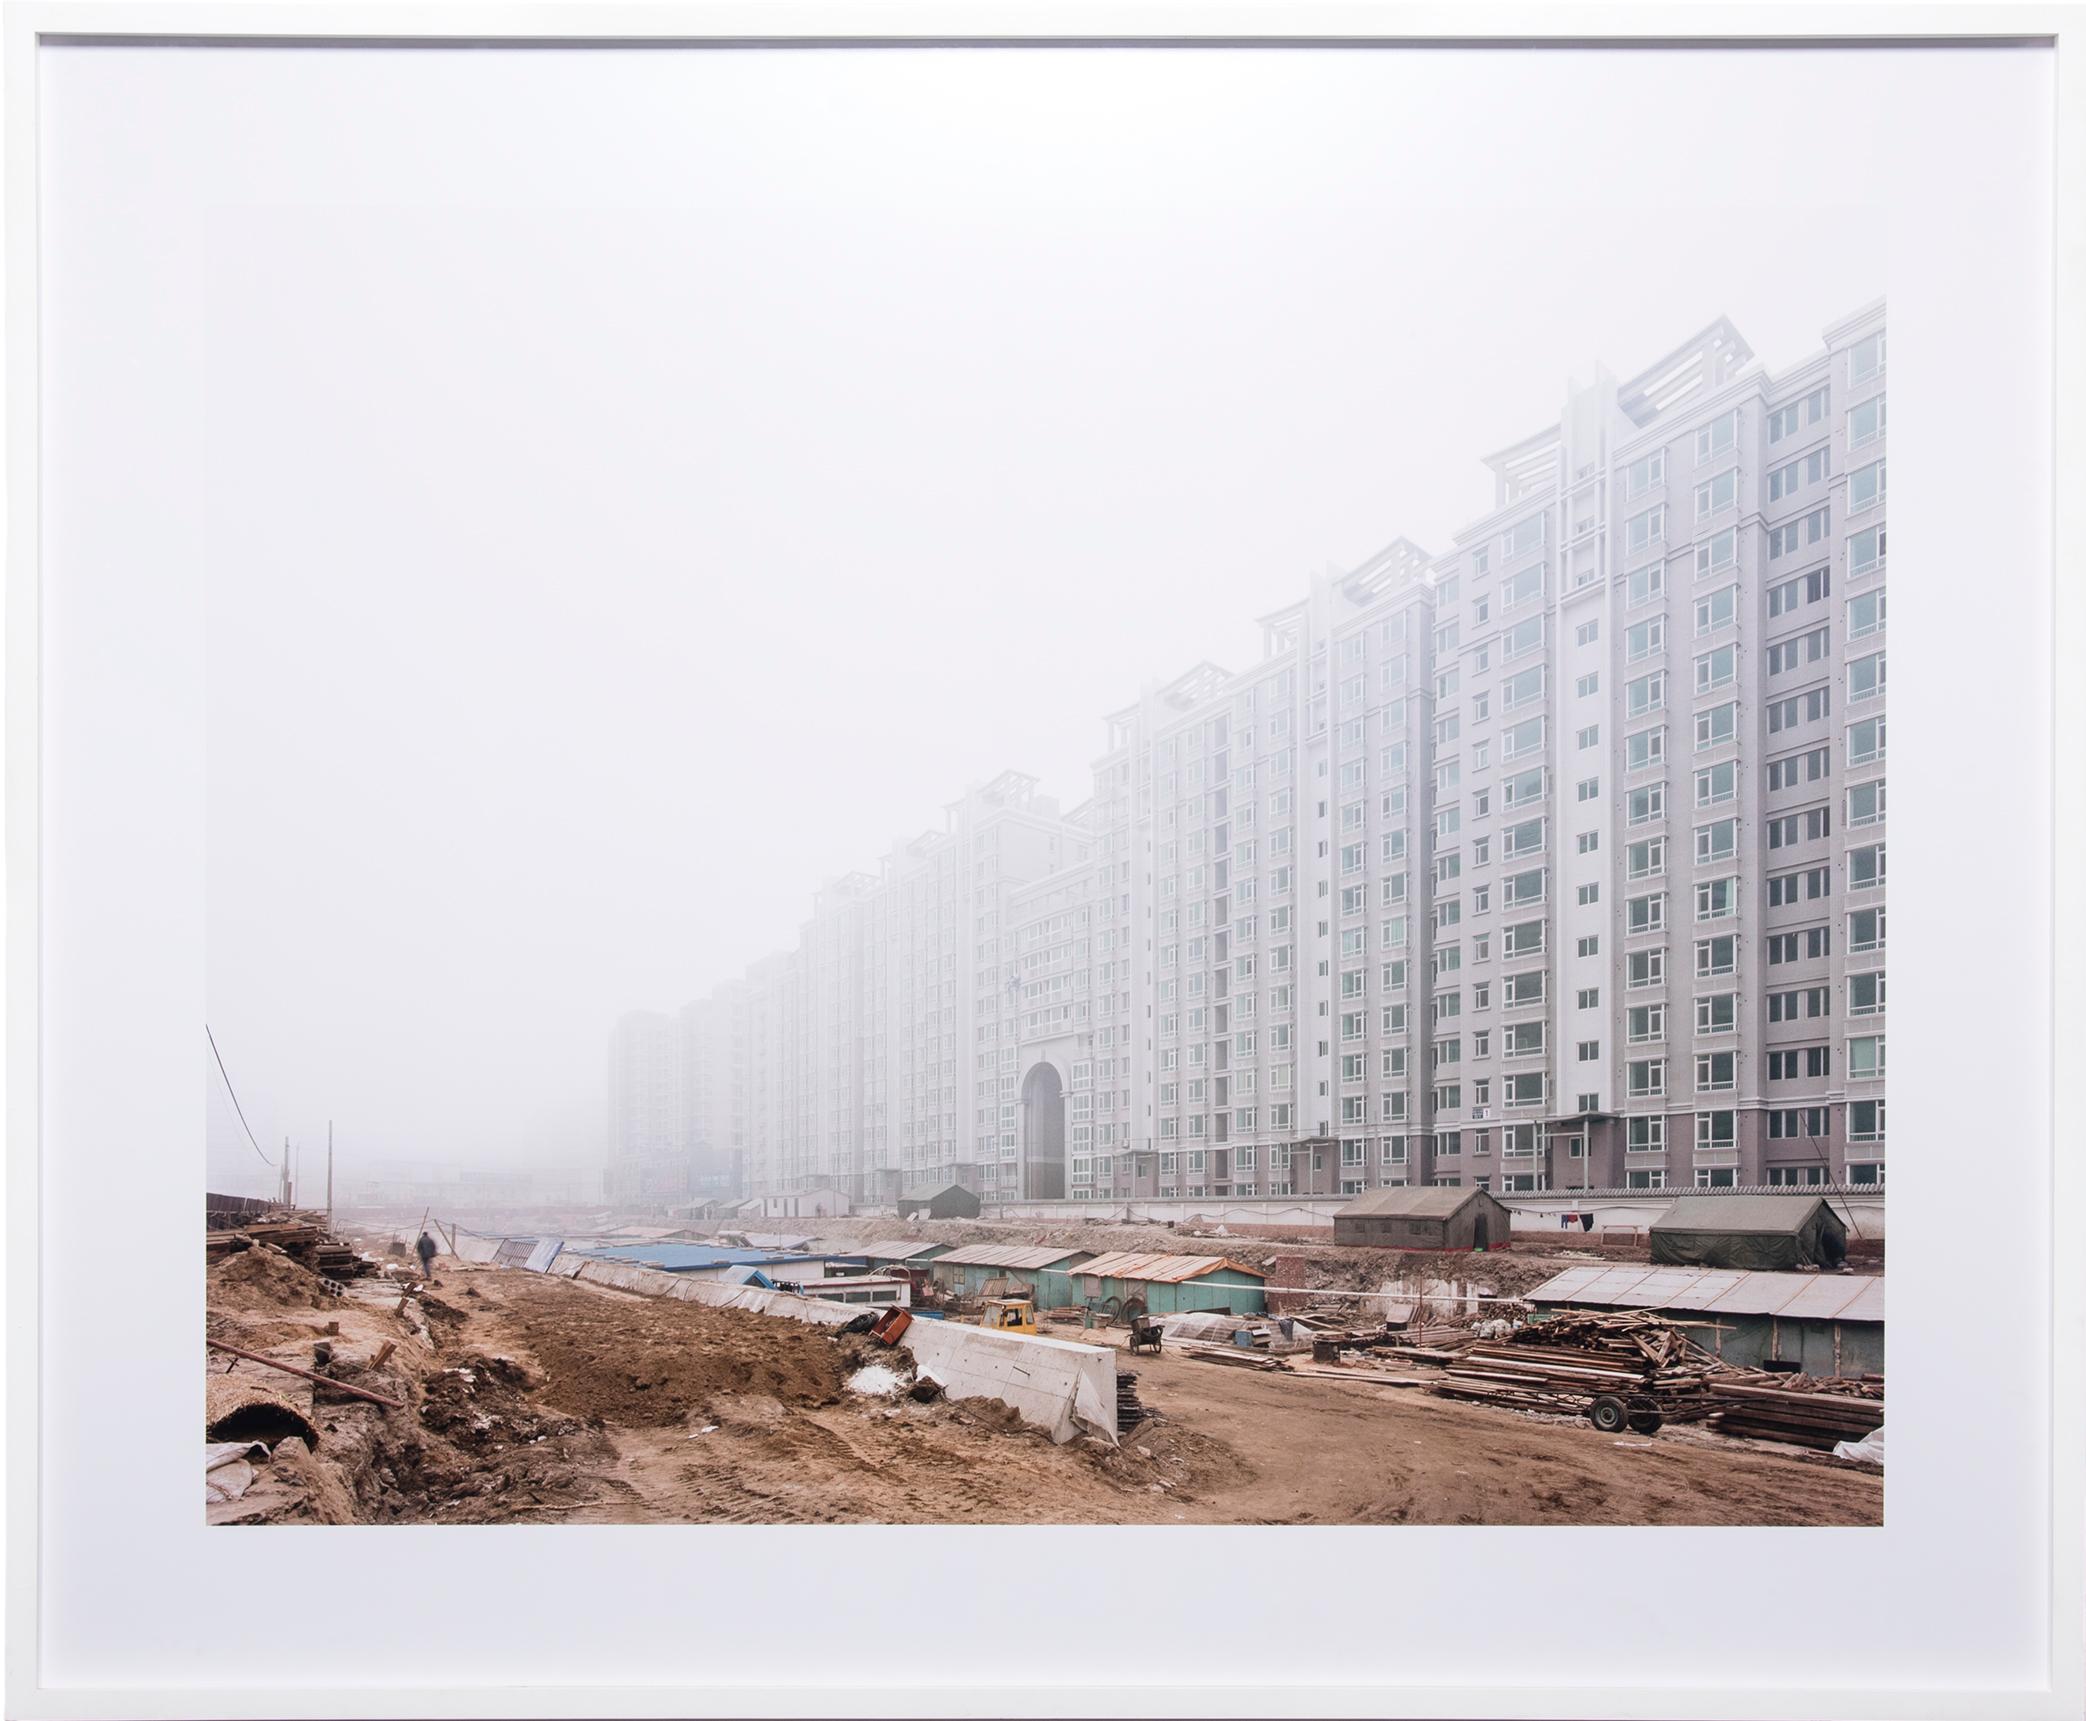 Sze Tsung Leong Landscape Photograph - "Xizhimen, Haidian District, Beijing, " C-Print, 2002